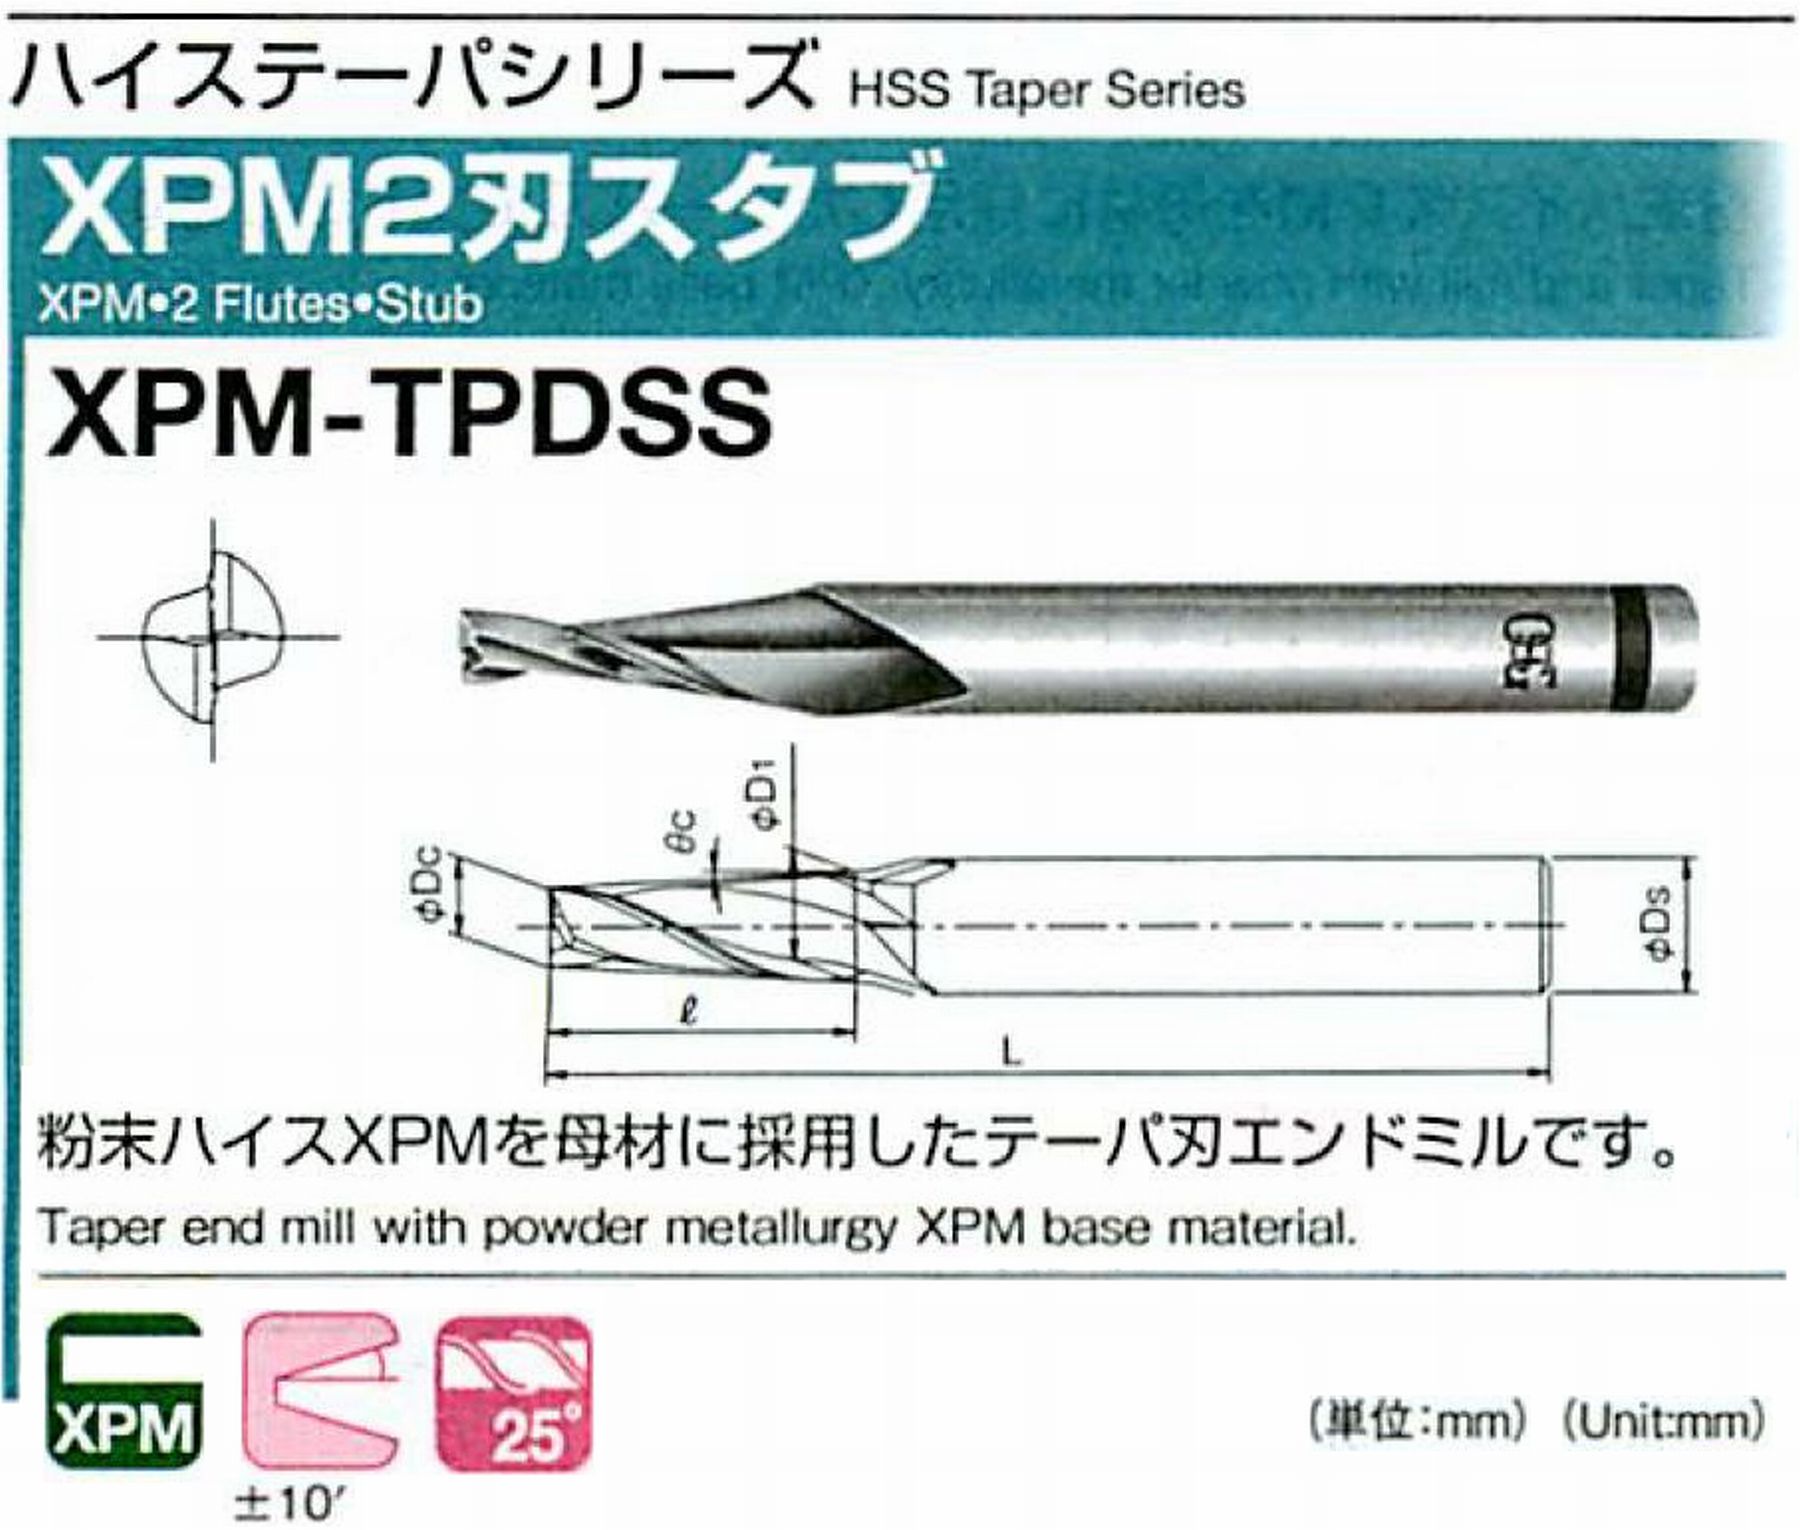 オーエスジー/OSG XPM2刃スタブ XPM-TPDSS 外径×刃部テーパ半角4×3° 全長59 刃長15 シャンク径6mm 大端径5.57